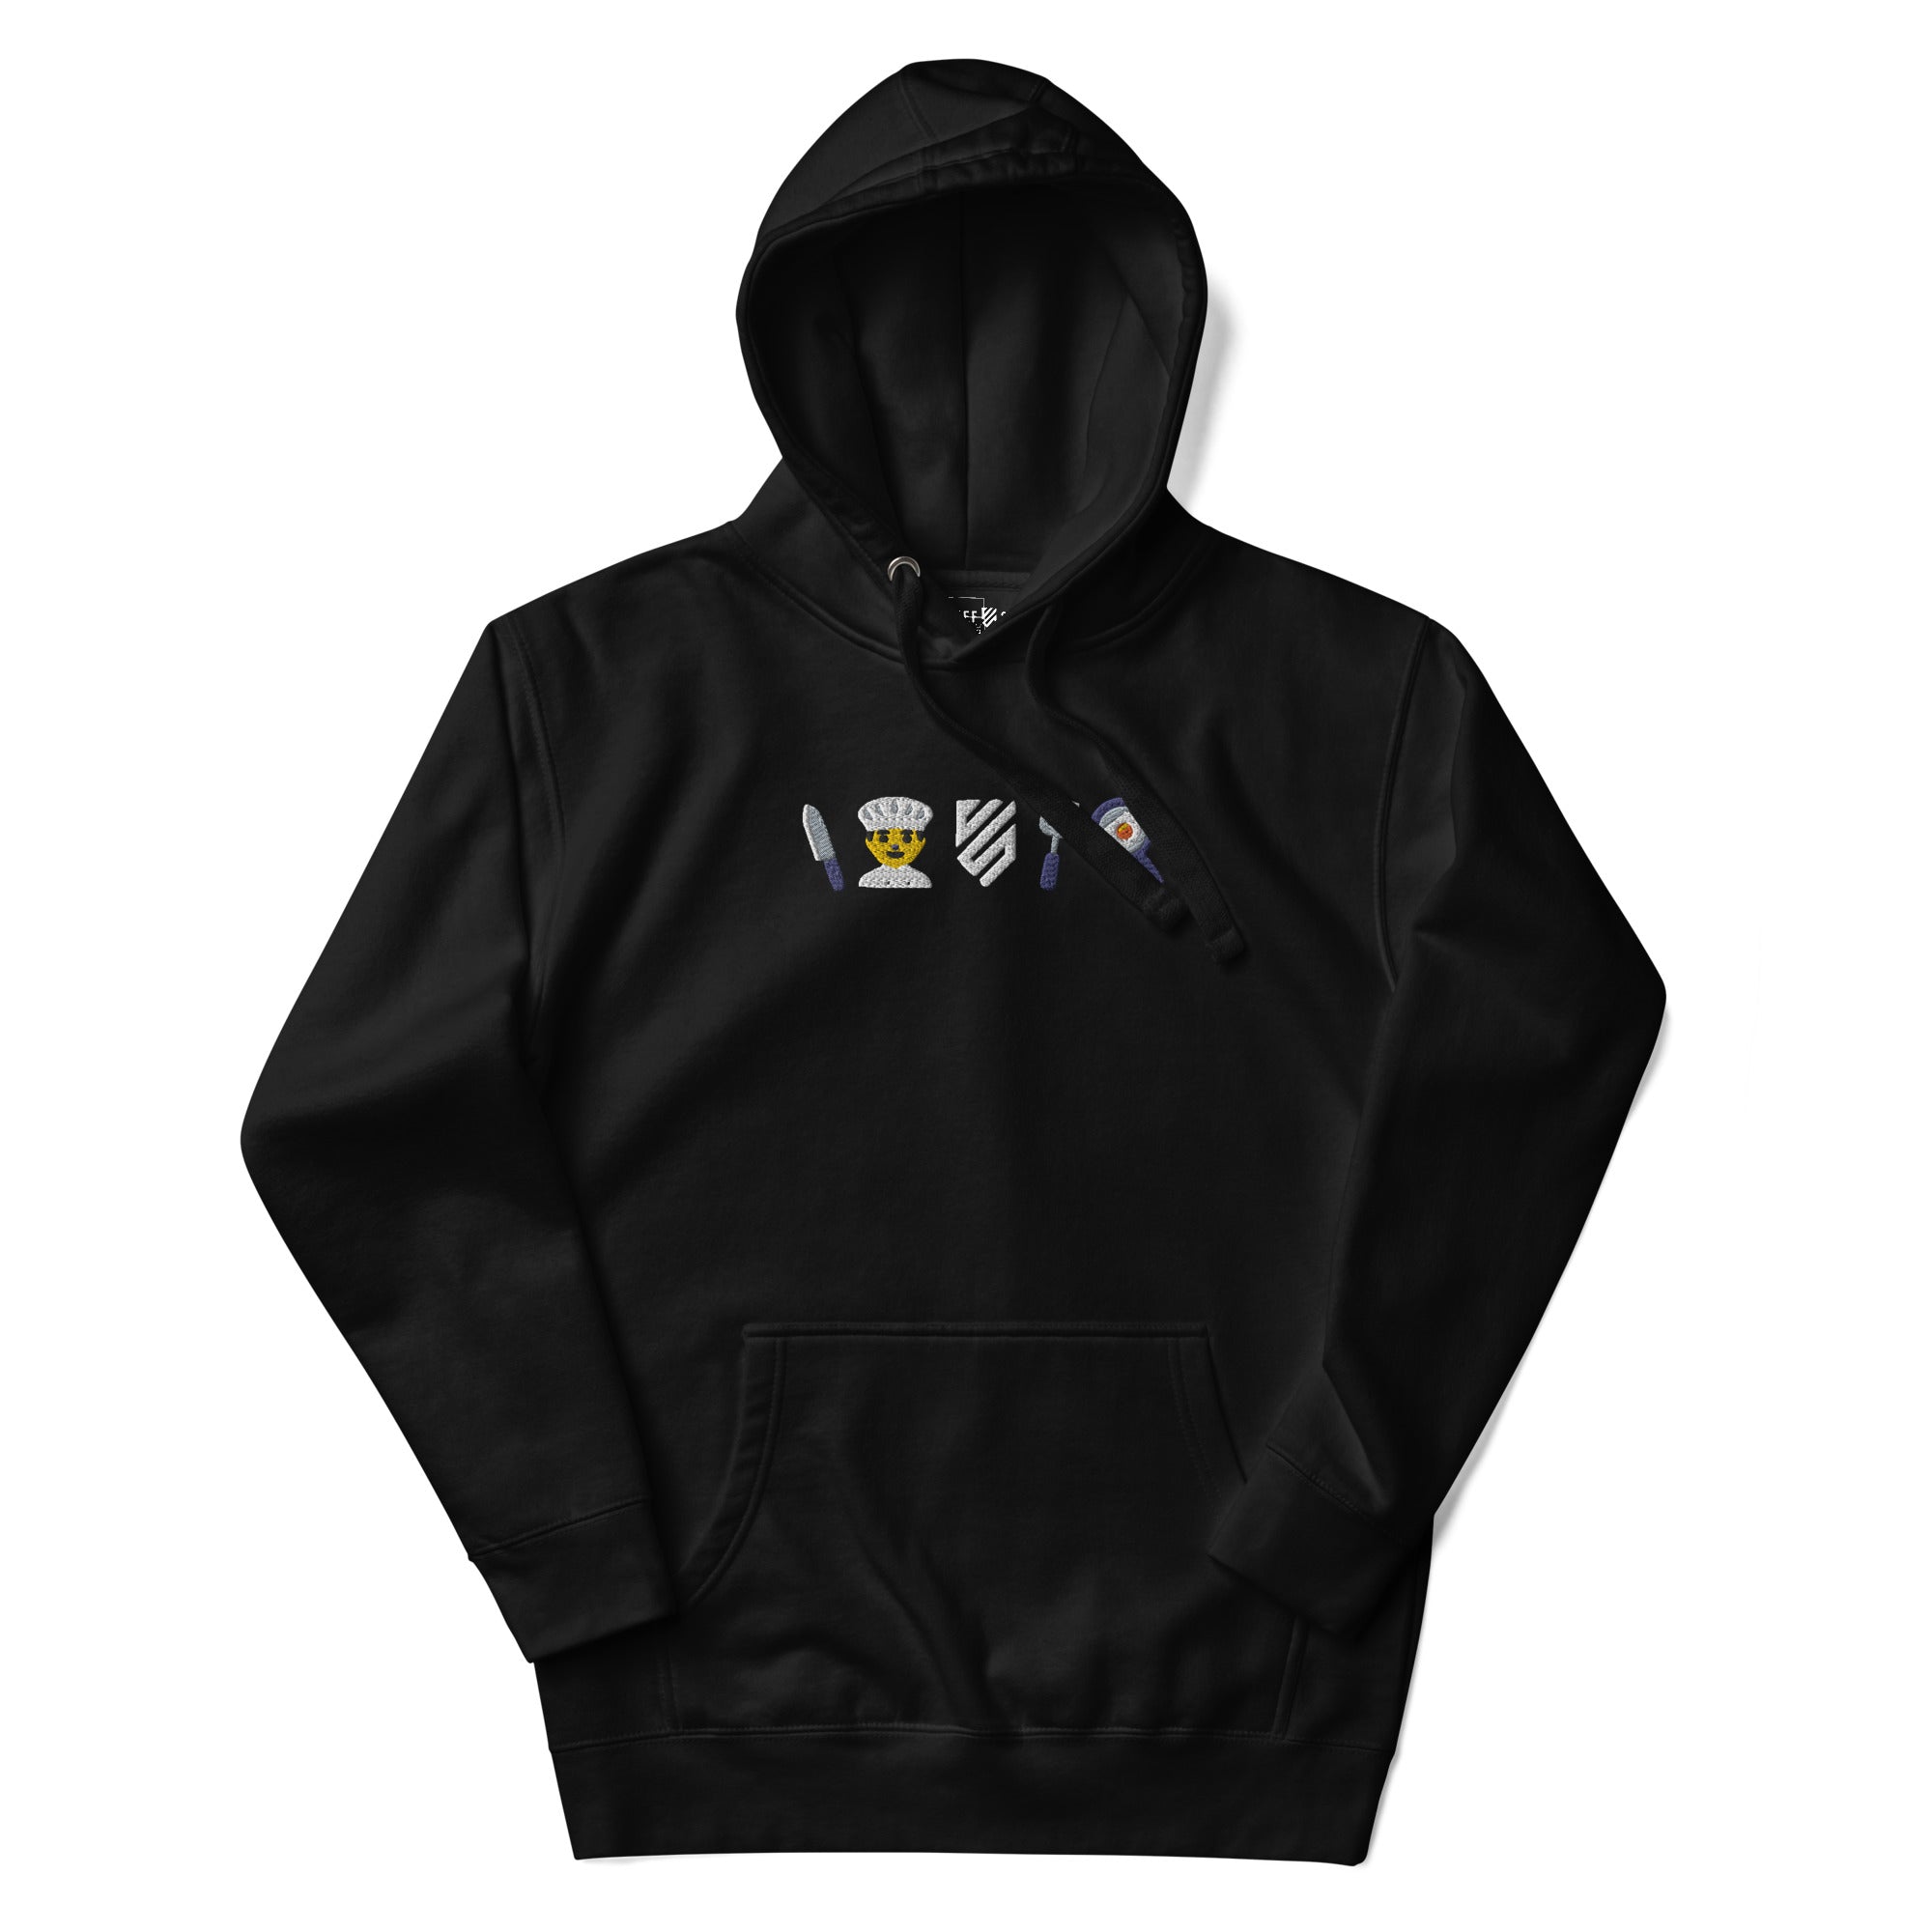 unisex-premium-hoodie-black-front-64daa18c14331.jpg